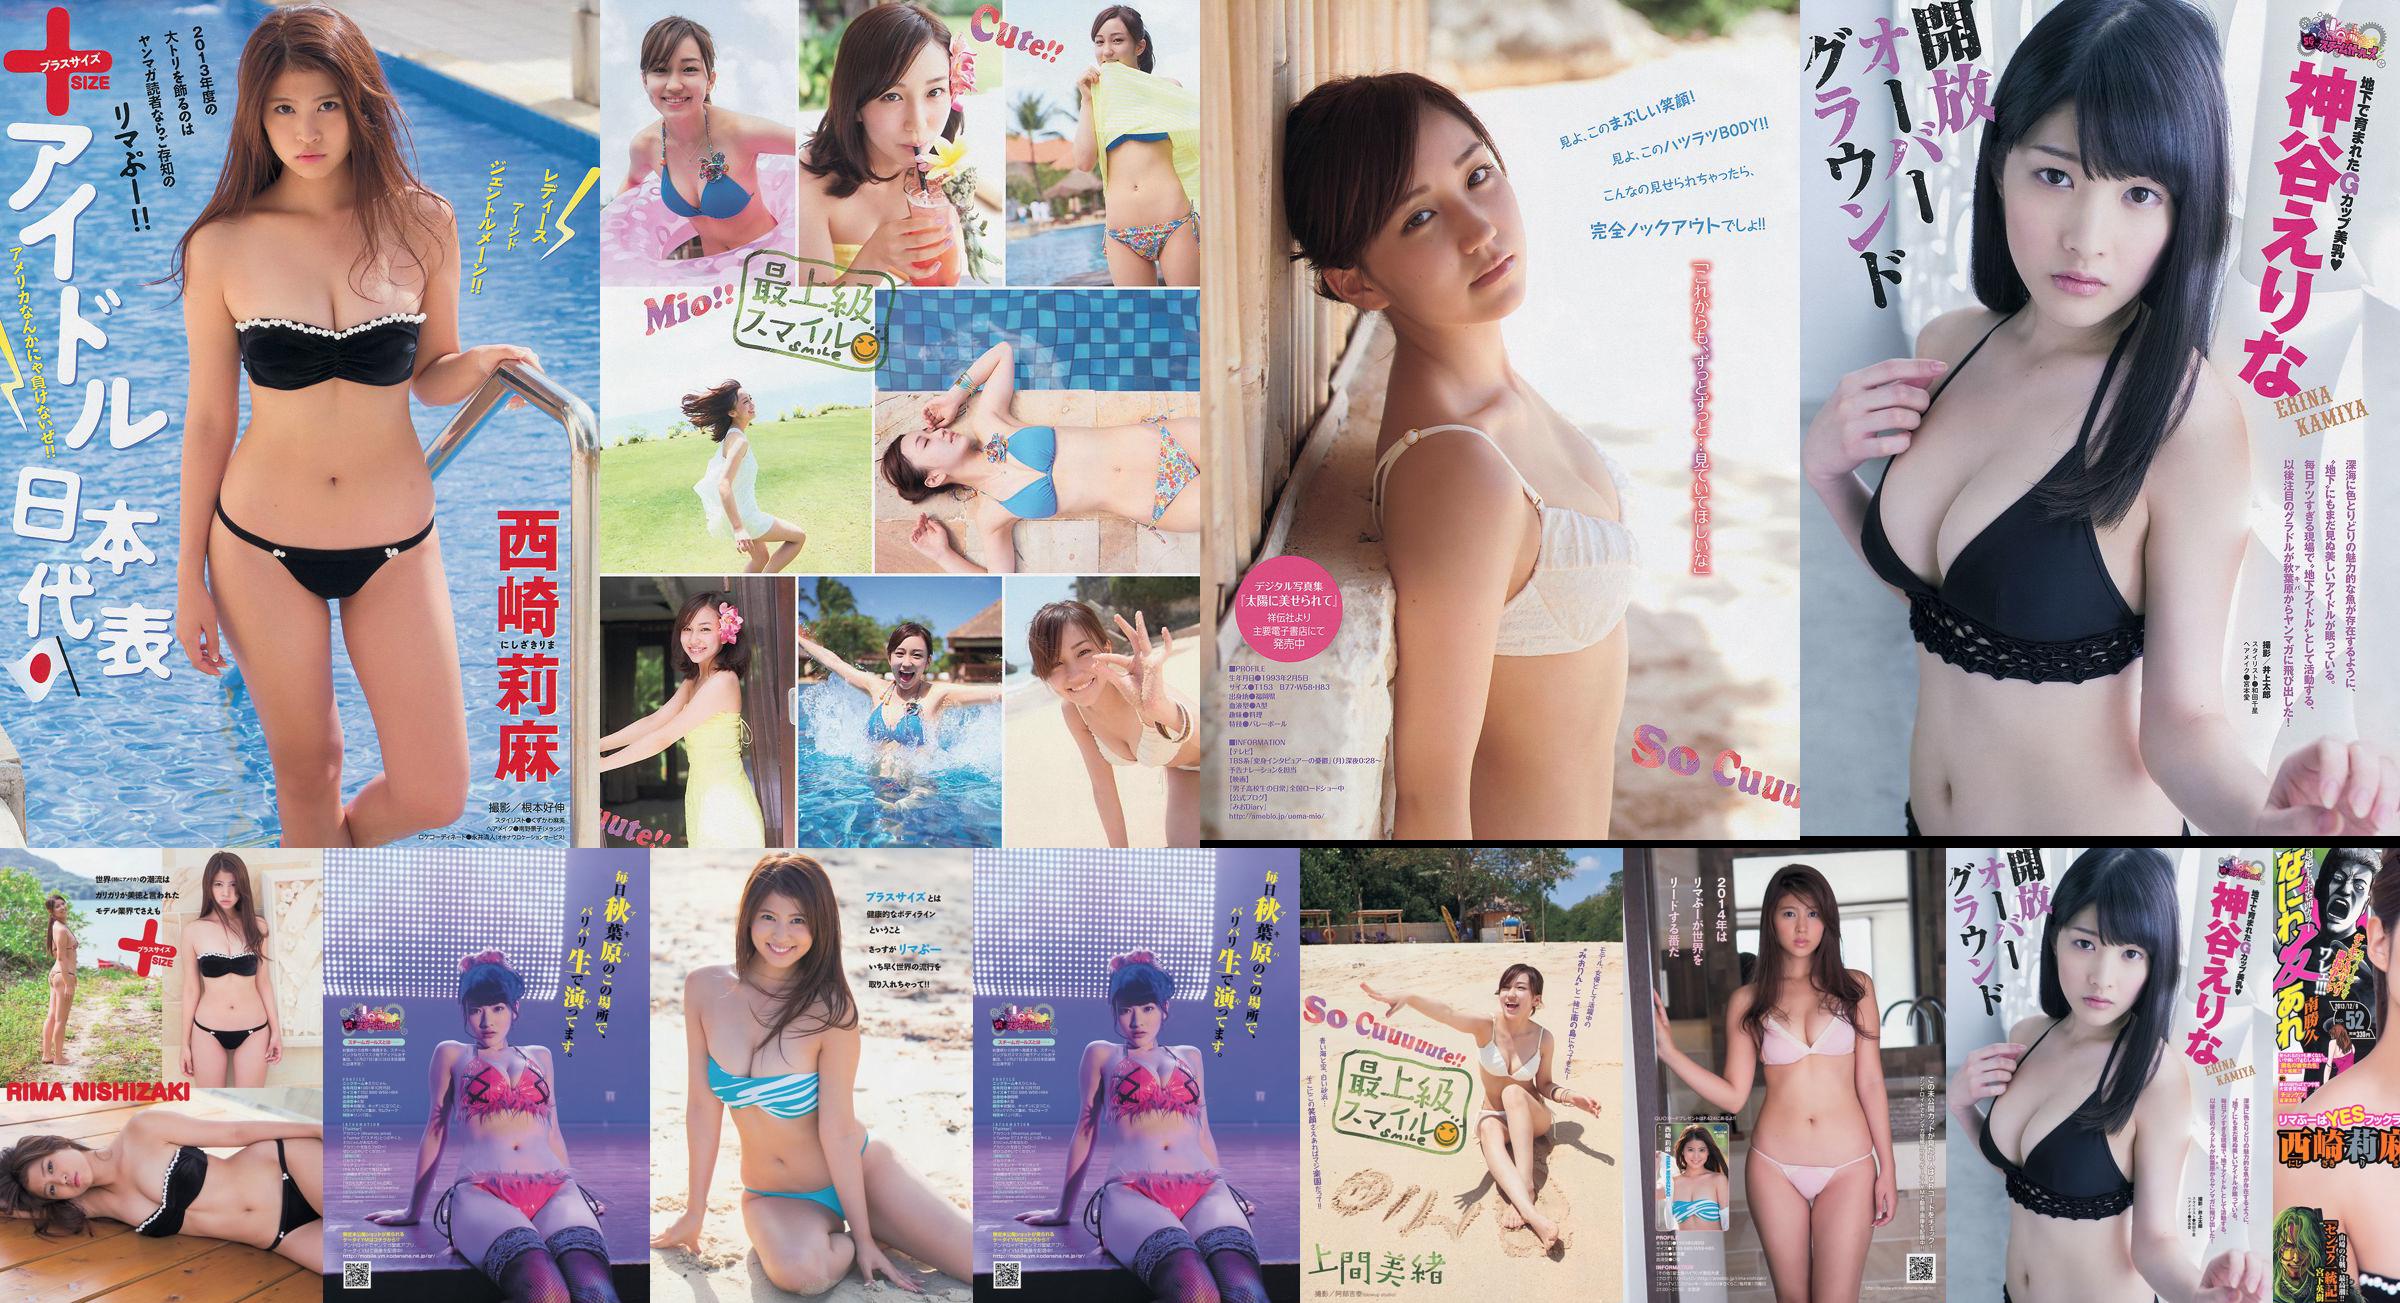 [Young Magazine] Rima Nishizaki Mio Uema Erina Kamiya 2013 No.52 Foto Moshi No.ac390e Pagina 1